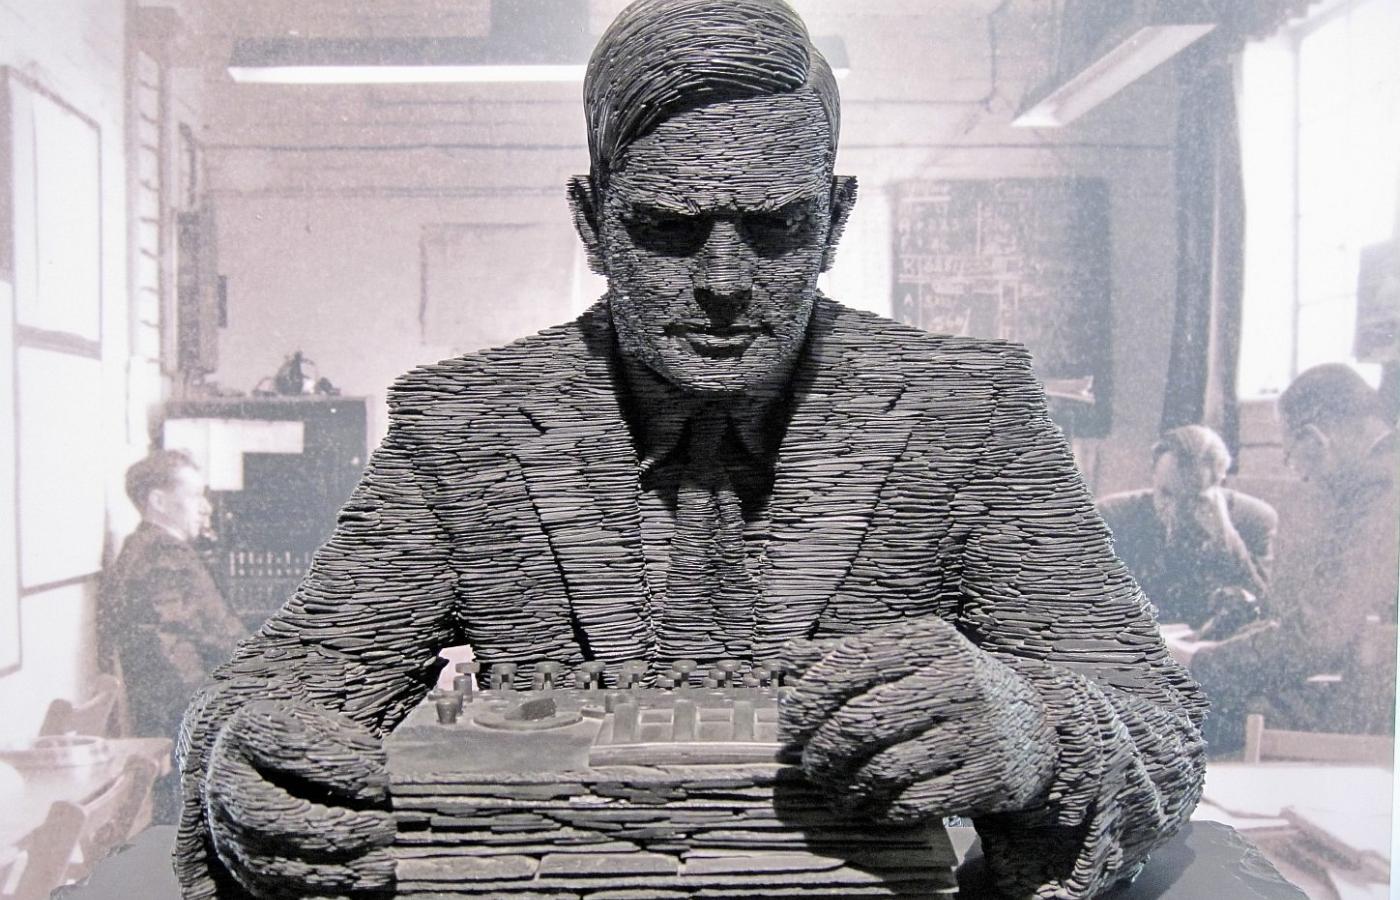 Rzeźba w centrum kryptologicznym Bletchley Park, przedstawiająca Alana Turinga.